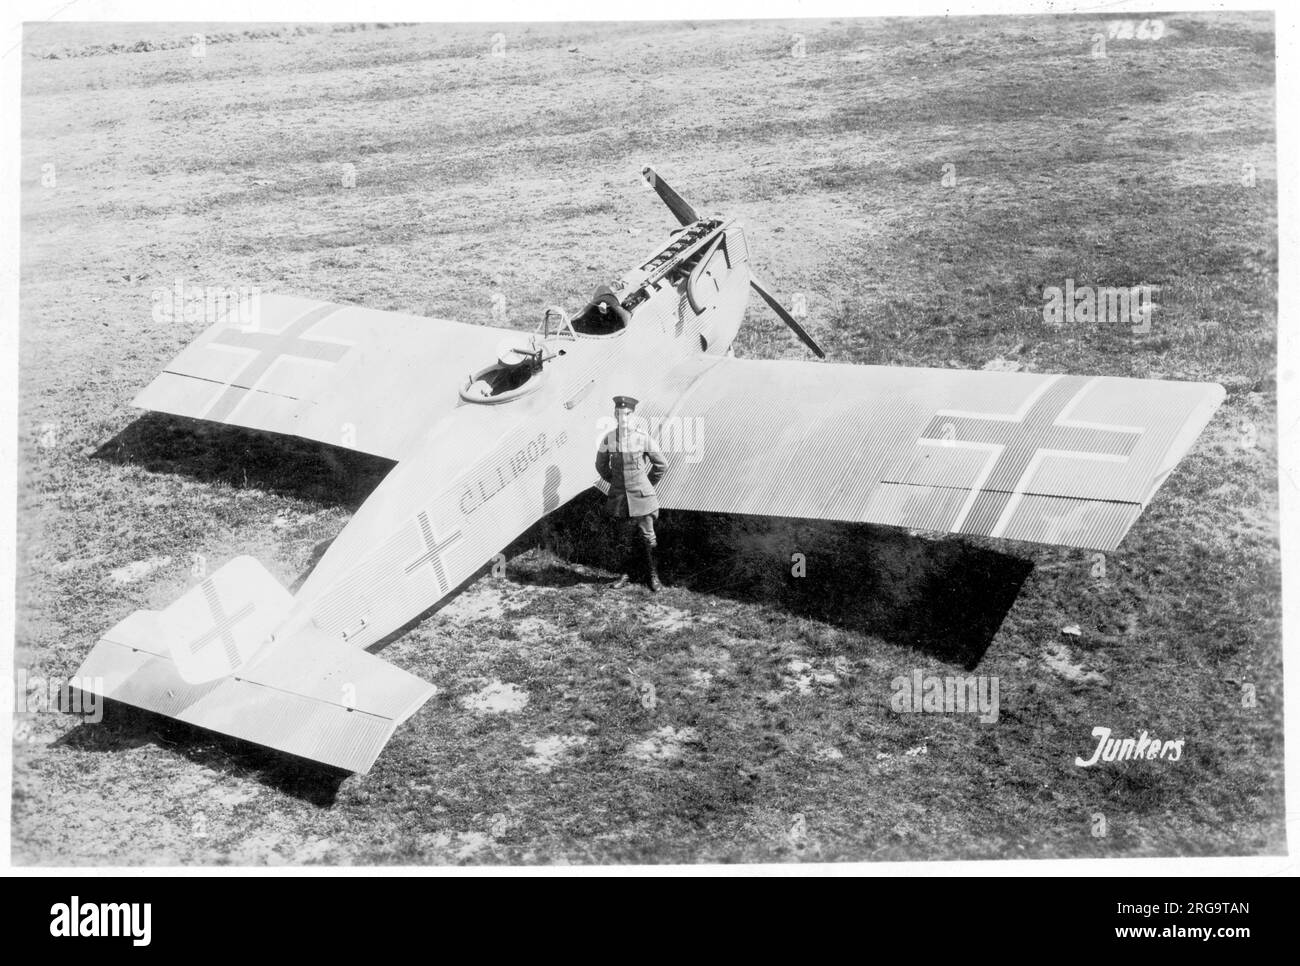 Luftstreitskrafte - Junkers CL.i .1802-18, prototipo 1st. Data la denominazione della società Junkers J 10, quarantasette aeromobili di produzione sono stati consegnati dall'armistizio nel novembre 1918. Foto Stock